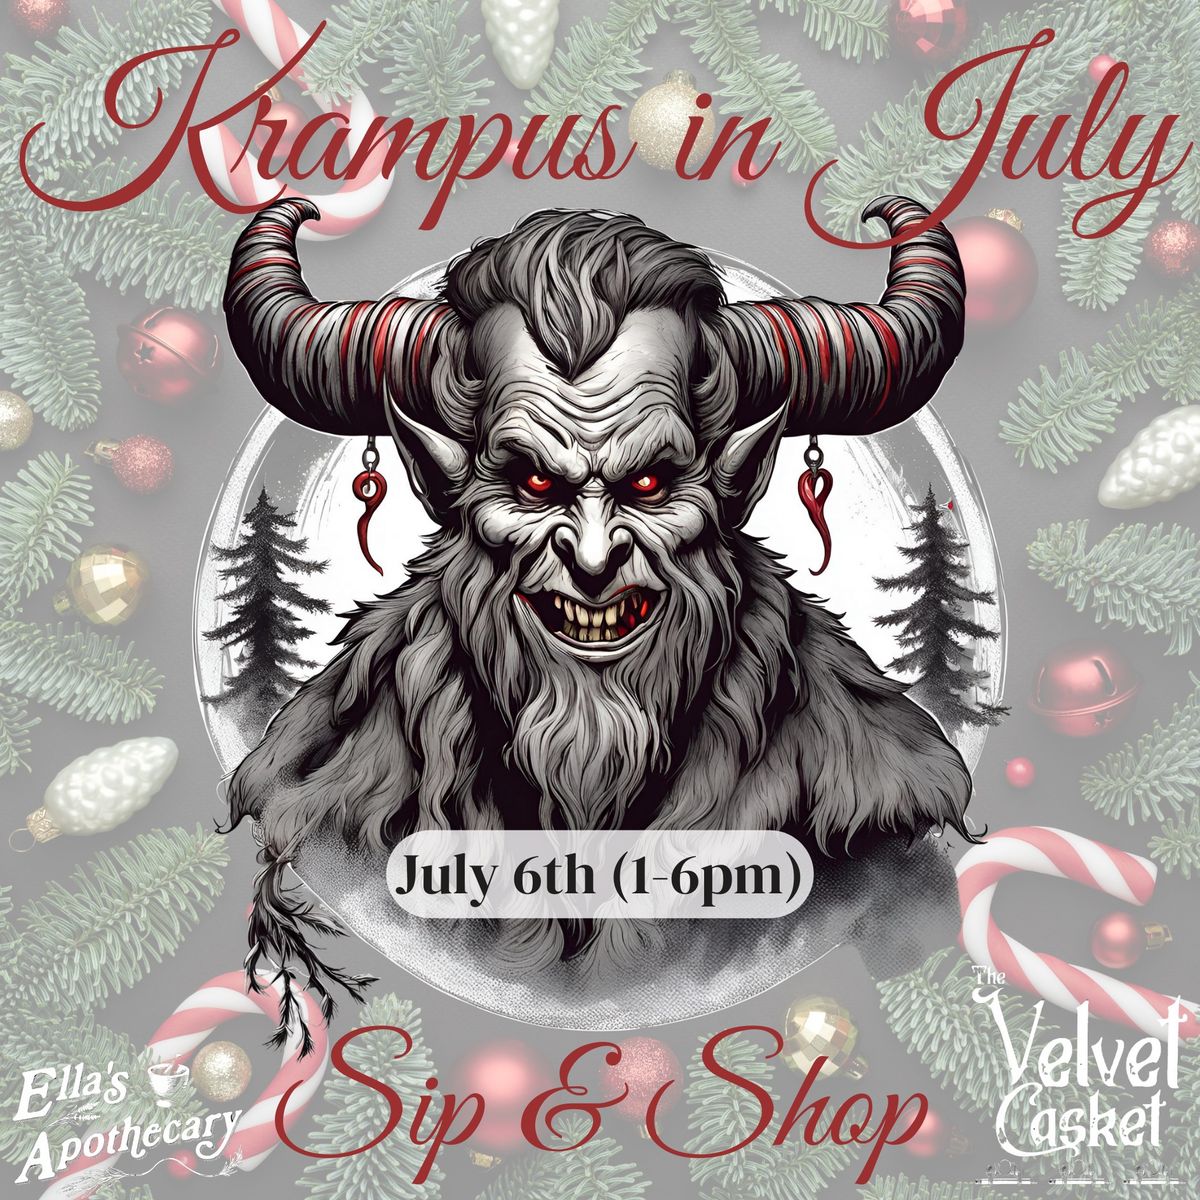 Krampus in July